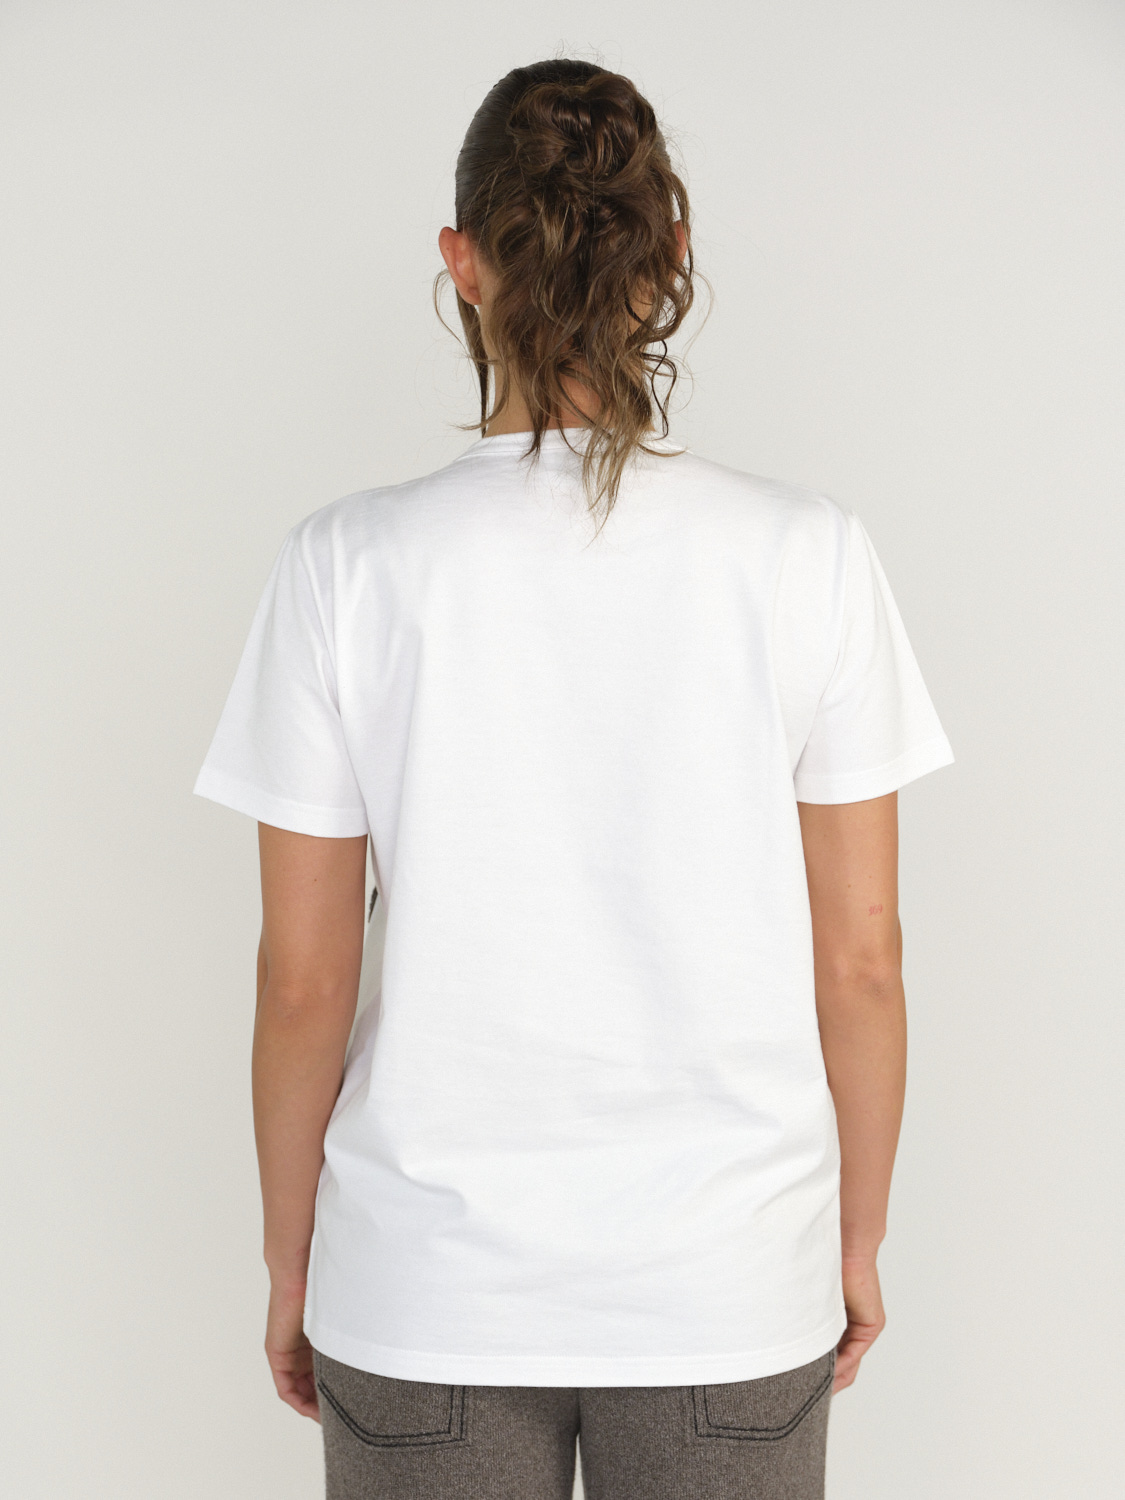 Barrie Barrie - Thistle - T - Shirt avec logo écusson beige XS